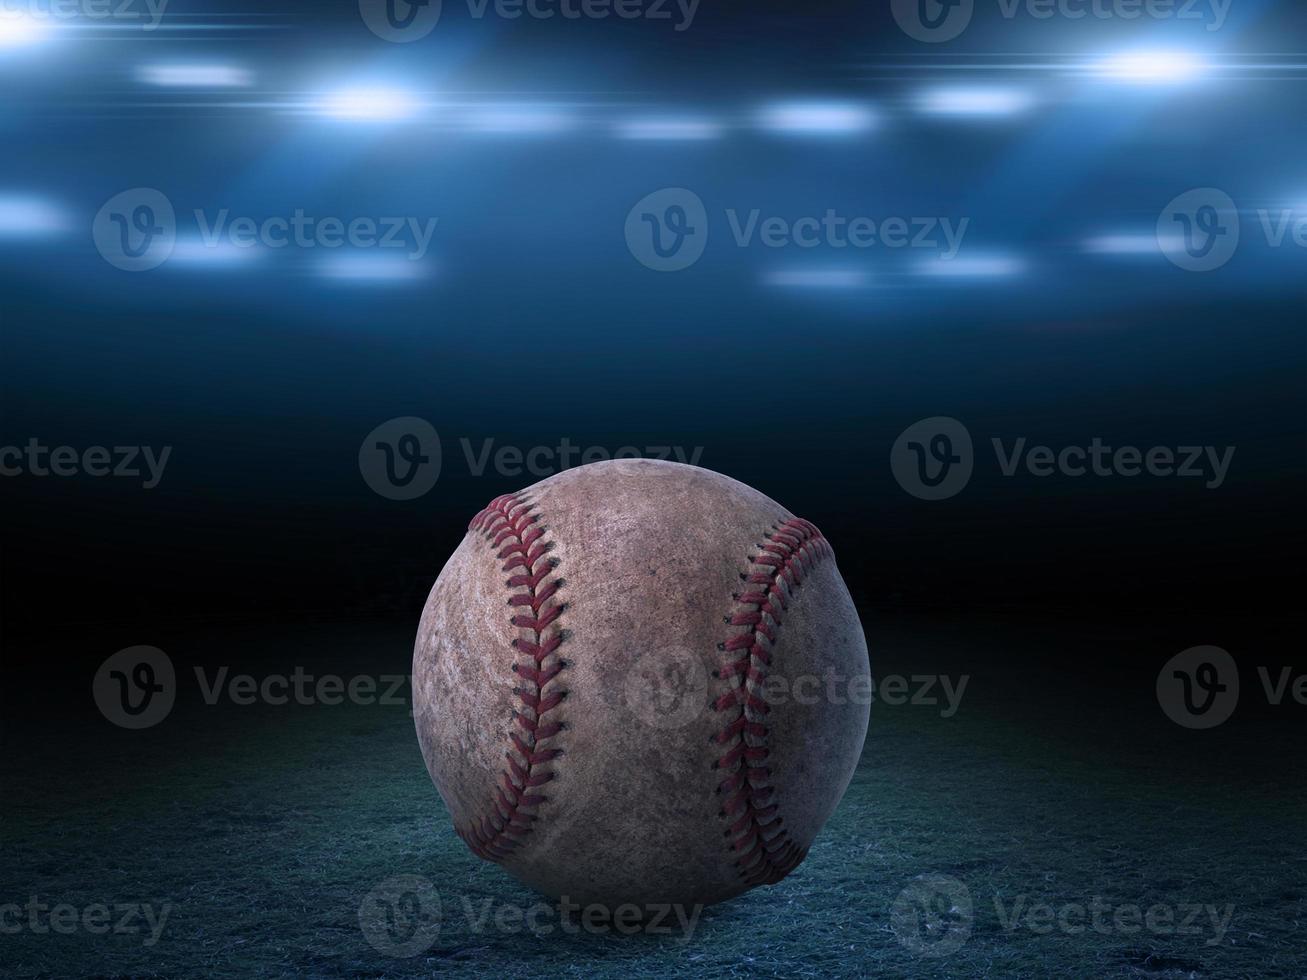 sportstadion mit baseballball im nachthintergrund. für Hintergrundwerbung foto